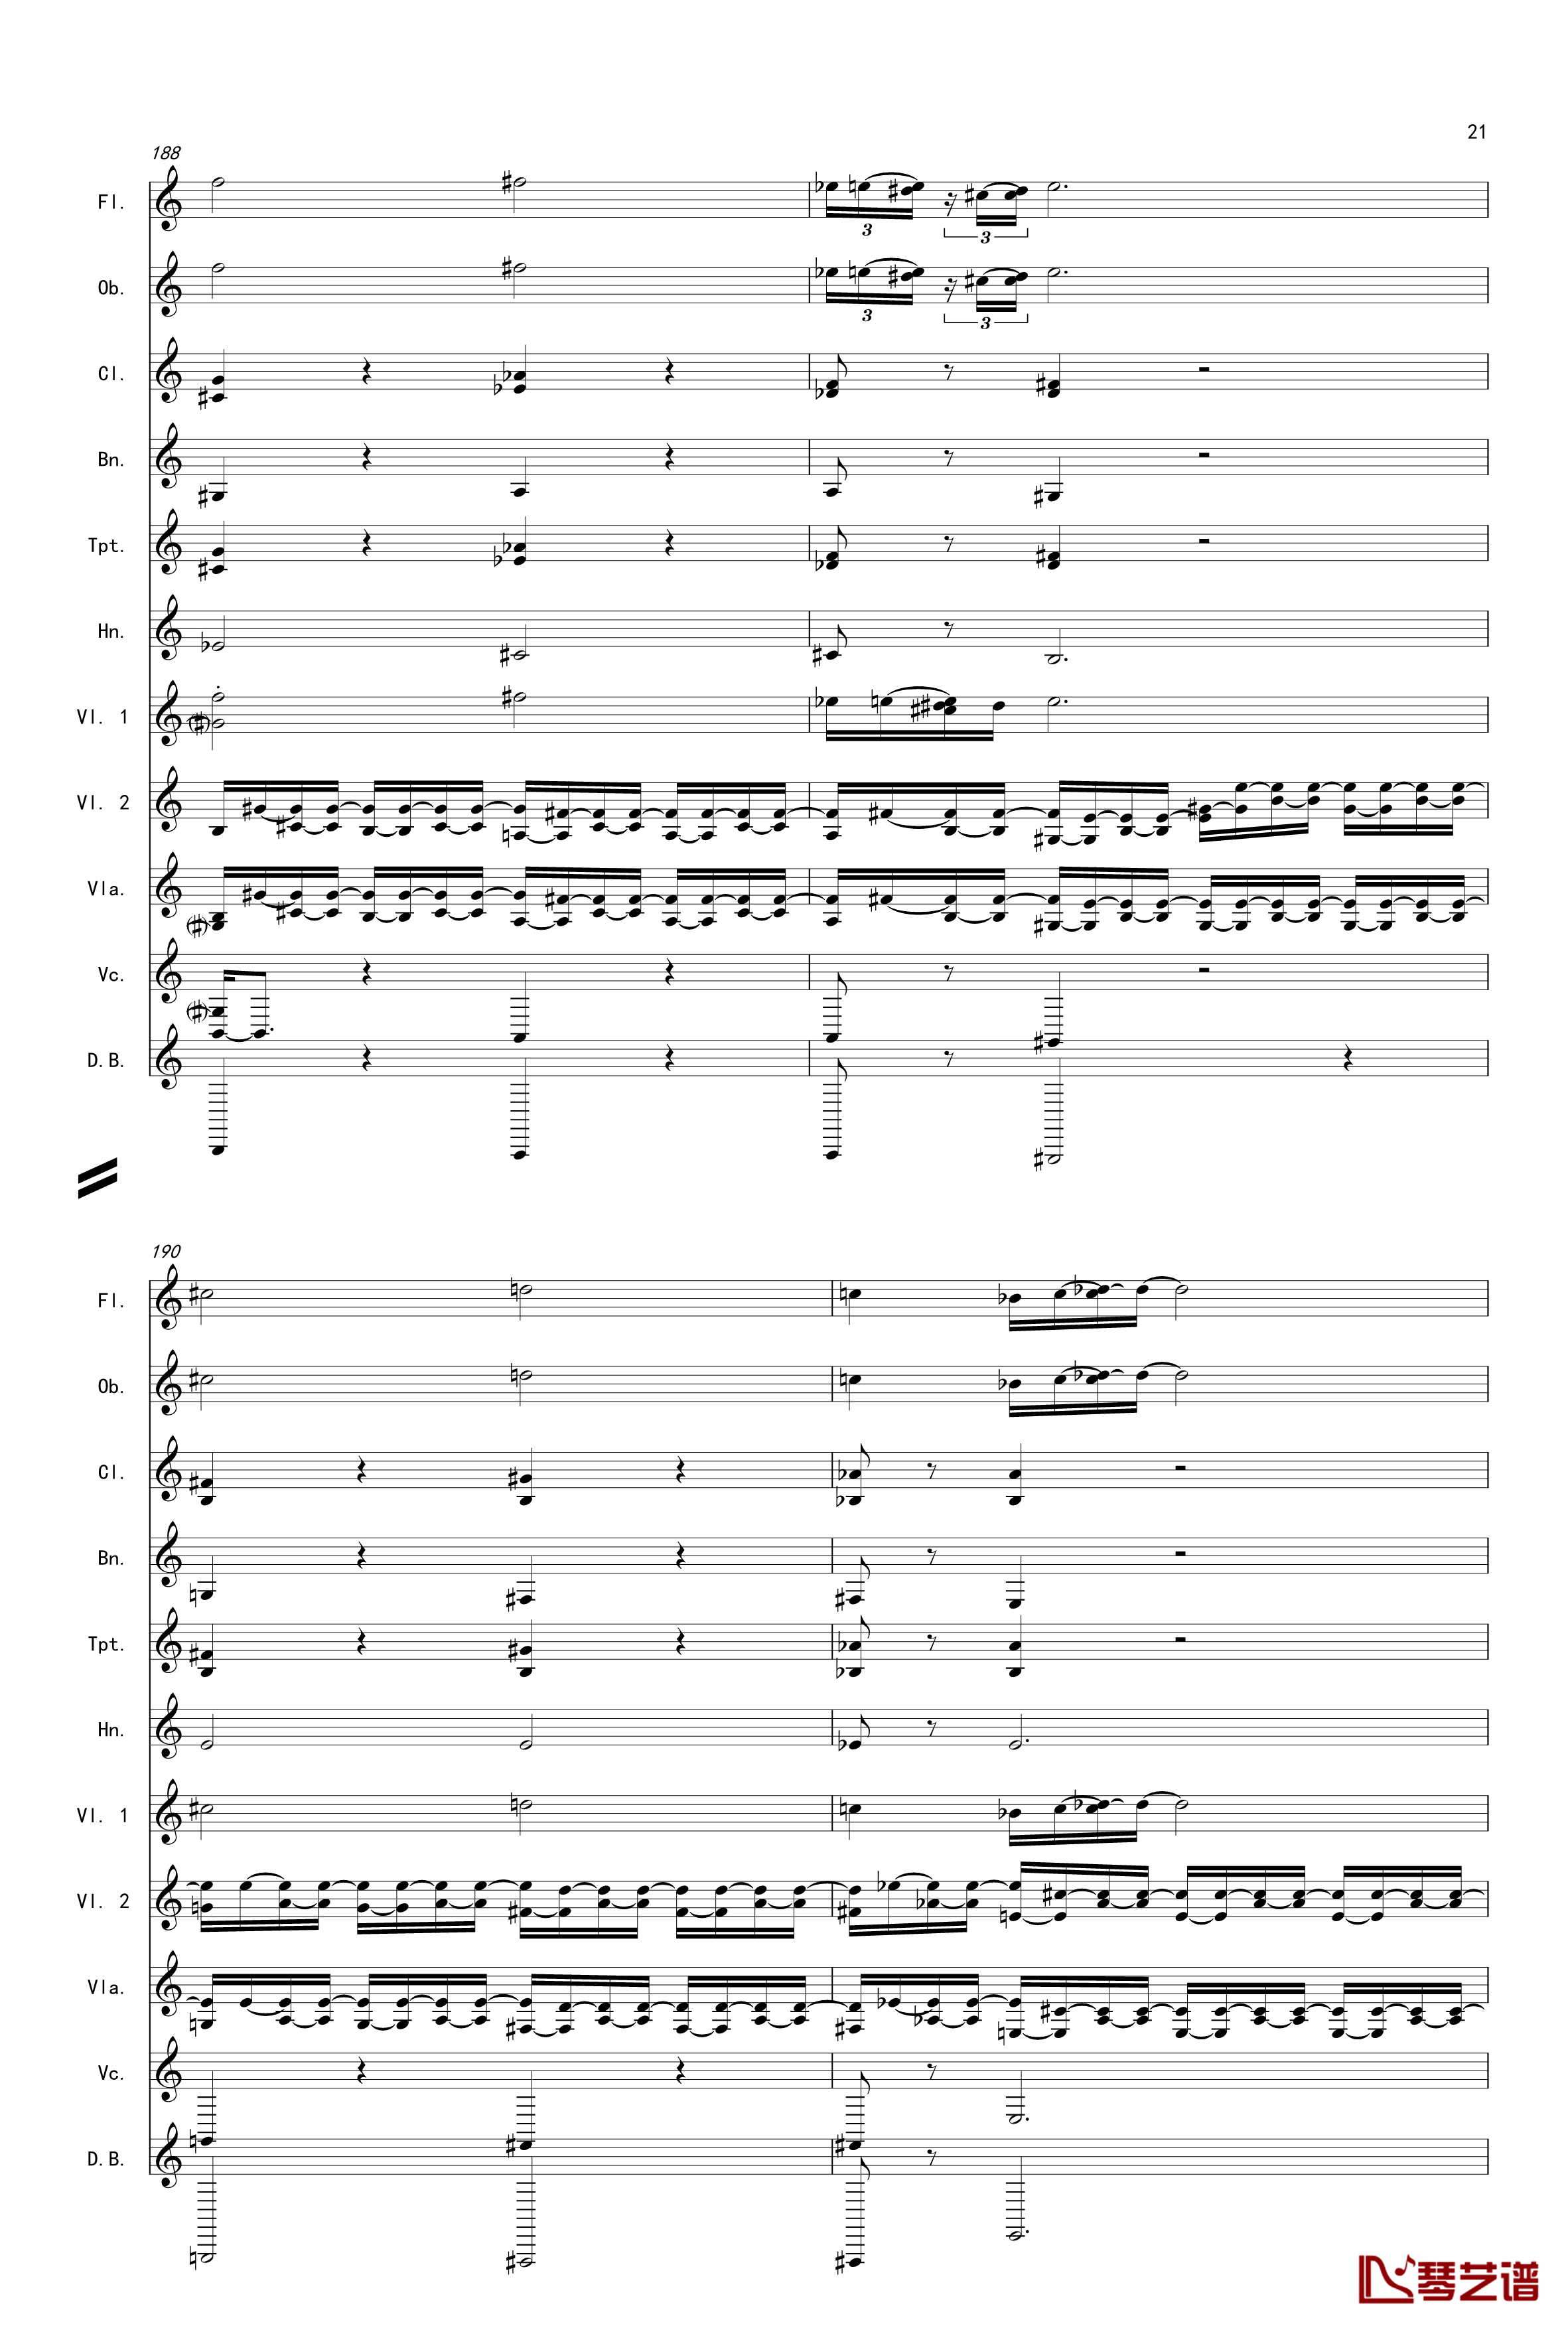 奏鸣曲之交响第14首Ⅲ钢琴谱-贝多芬-beethoven21